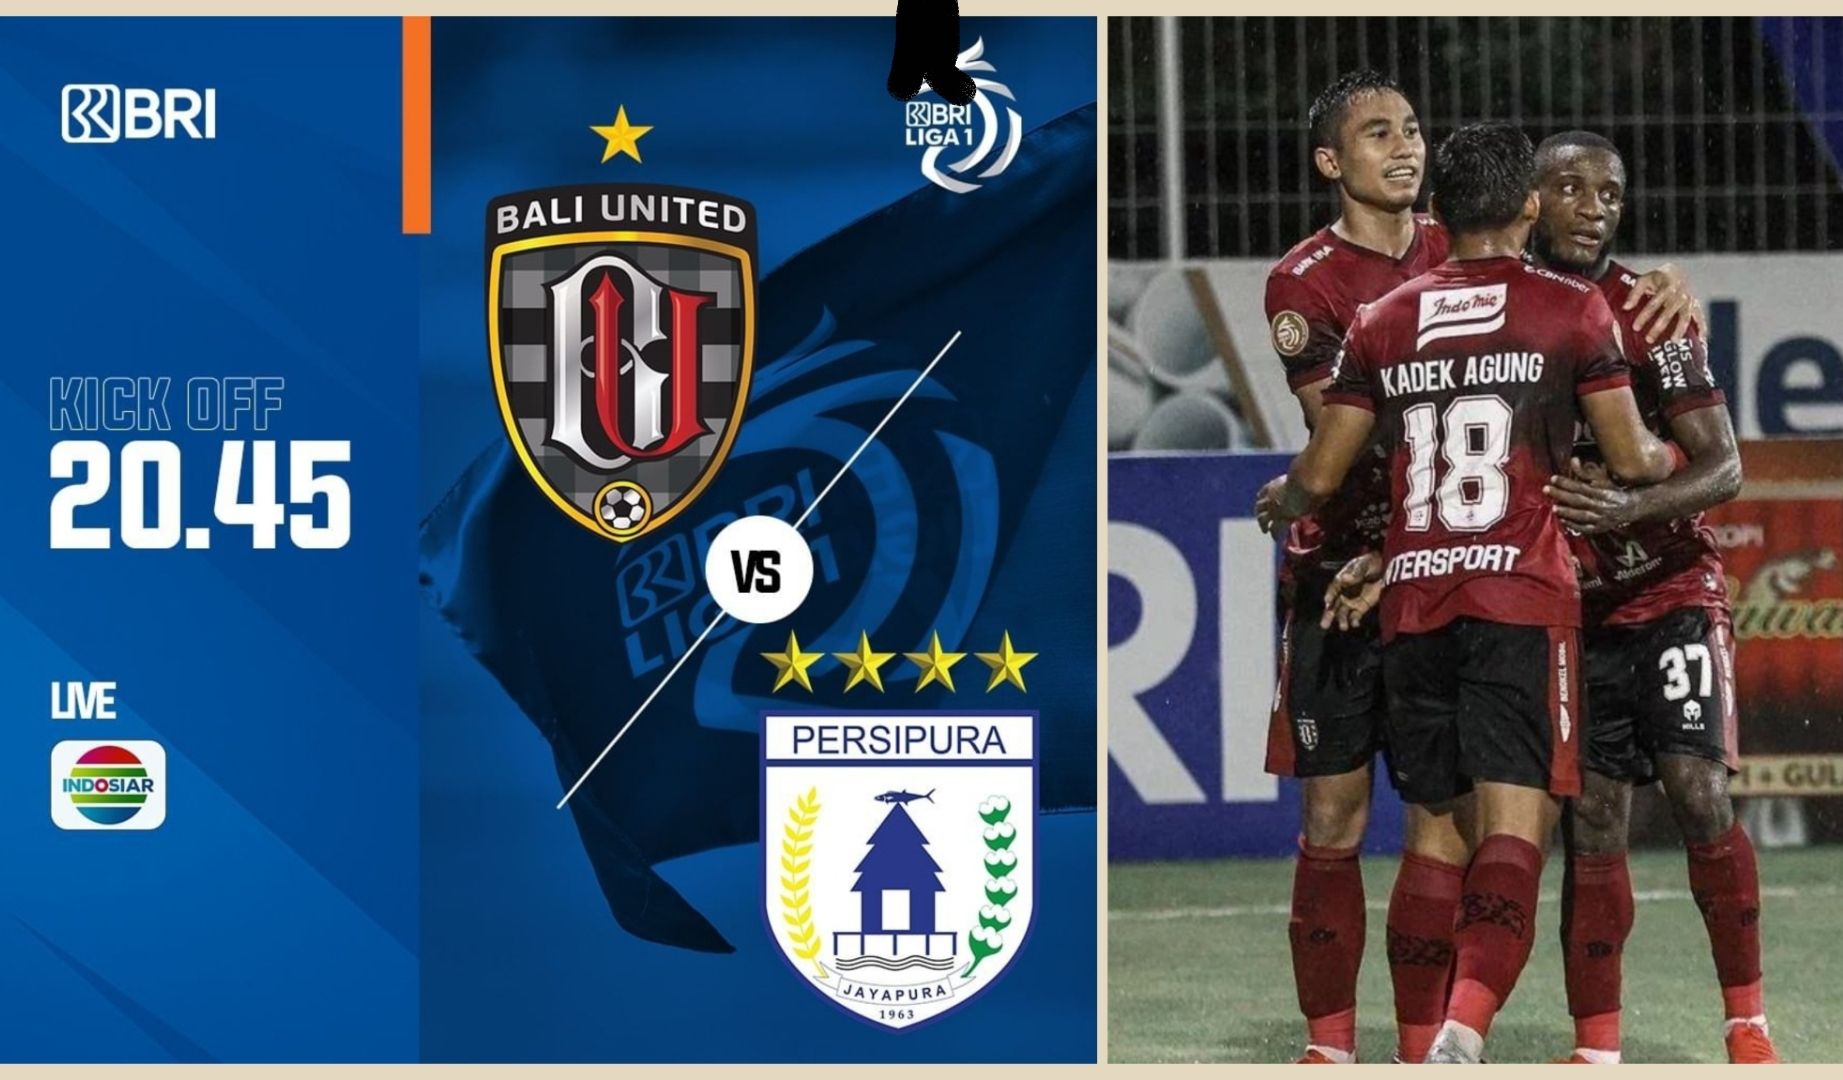 LINK LIVE STREAMING Bali United vs Persipura BRI Liga 1 Malam ini di Indosiar, 24 Februari 2022 